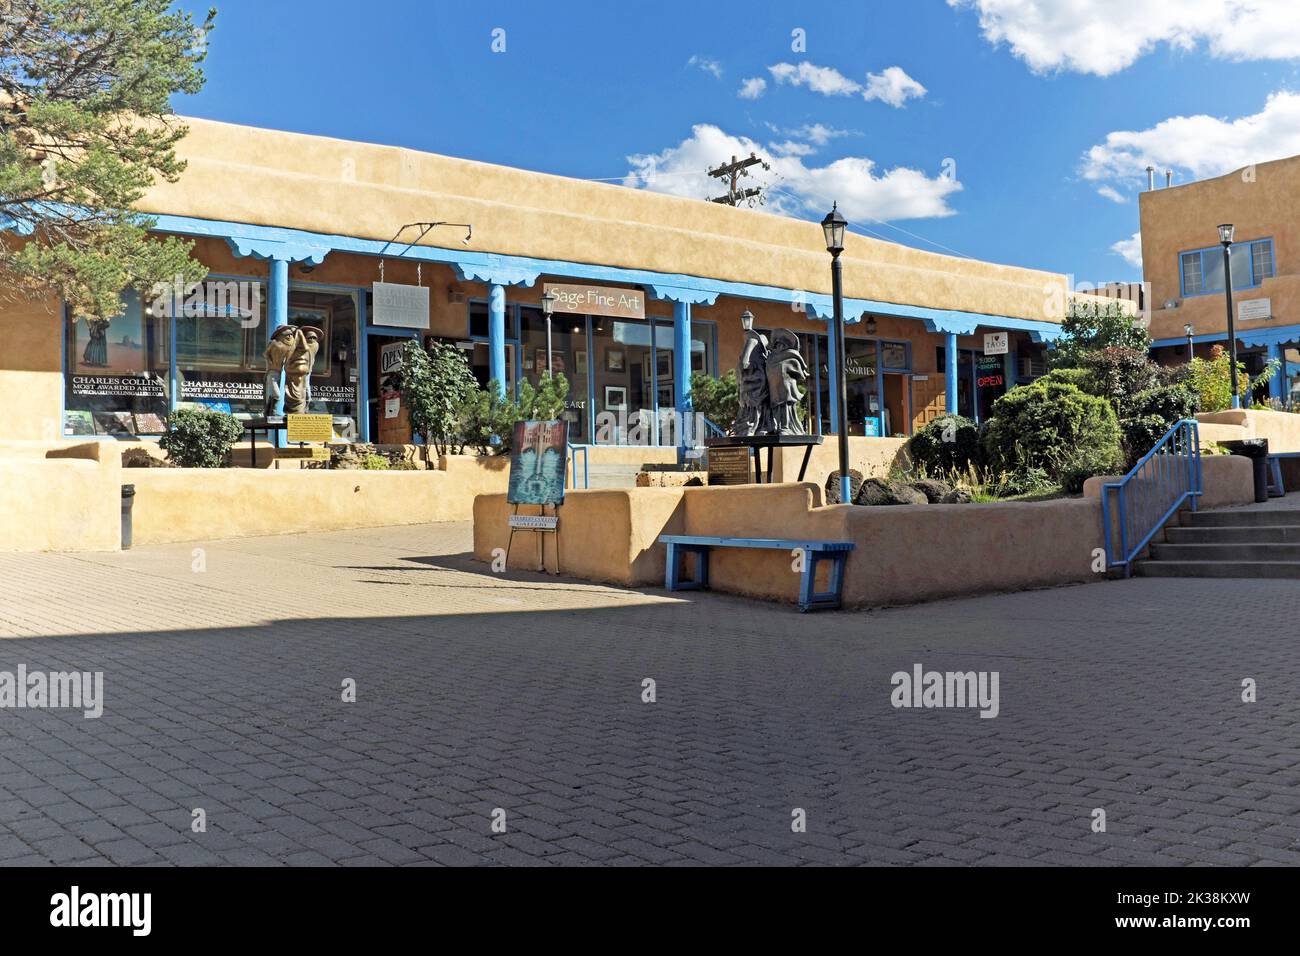 Une section de l'historique Taos Plaza en plein air à Taos, Nouveau-Mexique, comprend des œuvres d'art publiques qui témoignent de l'ambiance artistique de la région. Banque D'Images